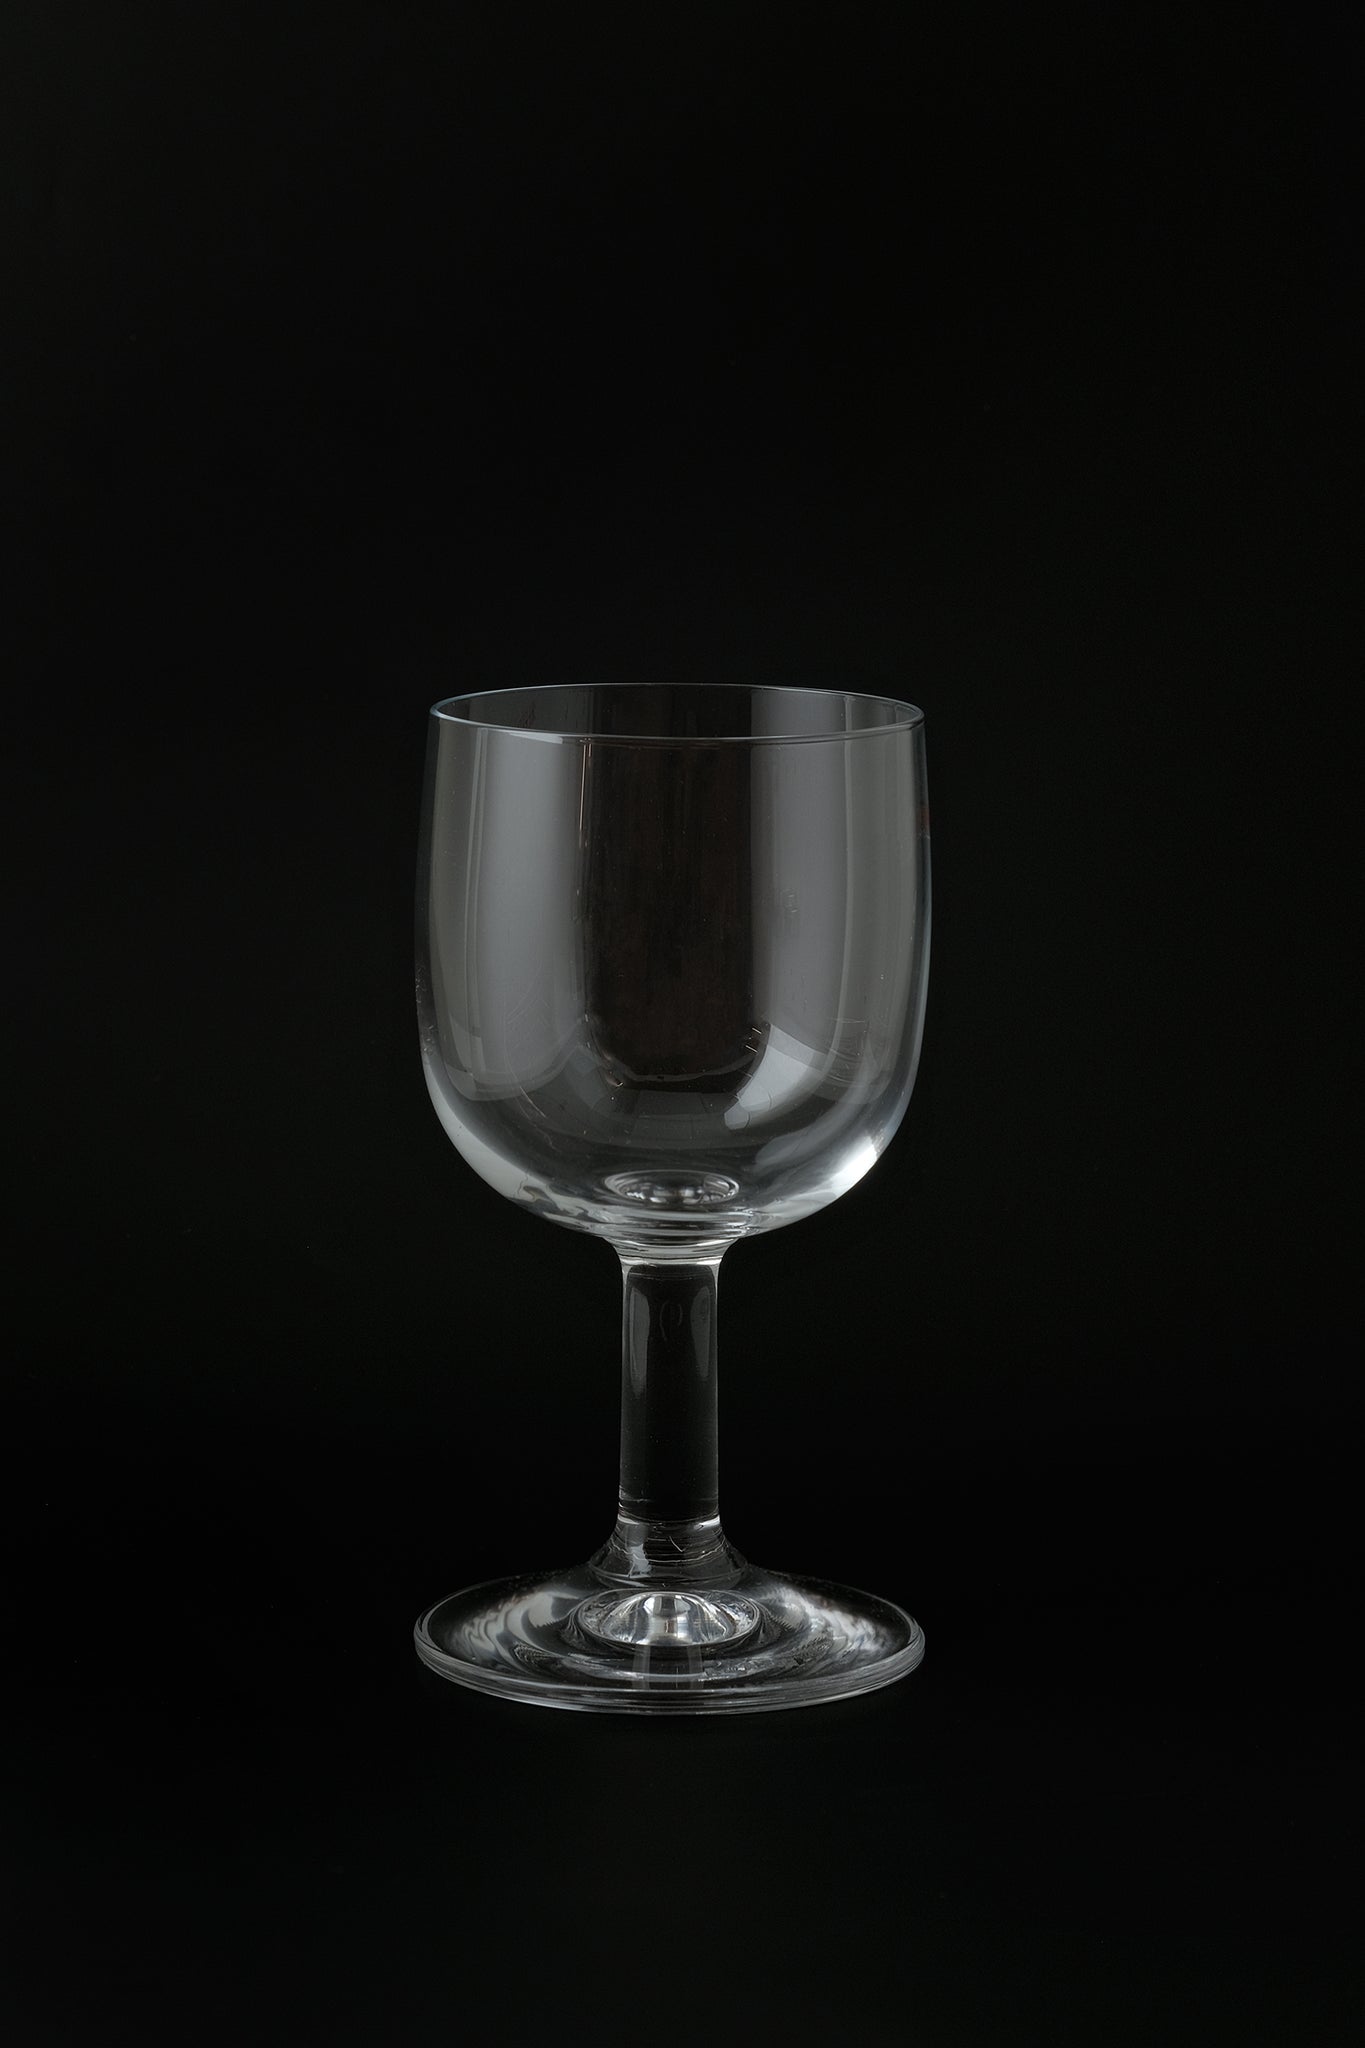 Glass family wine glass